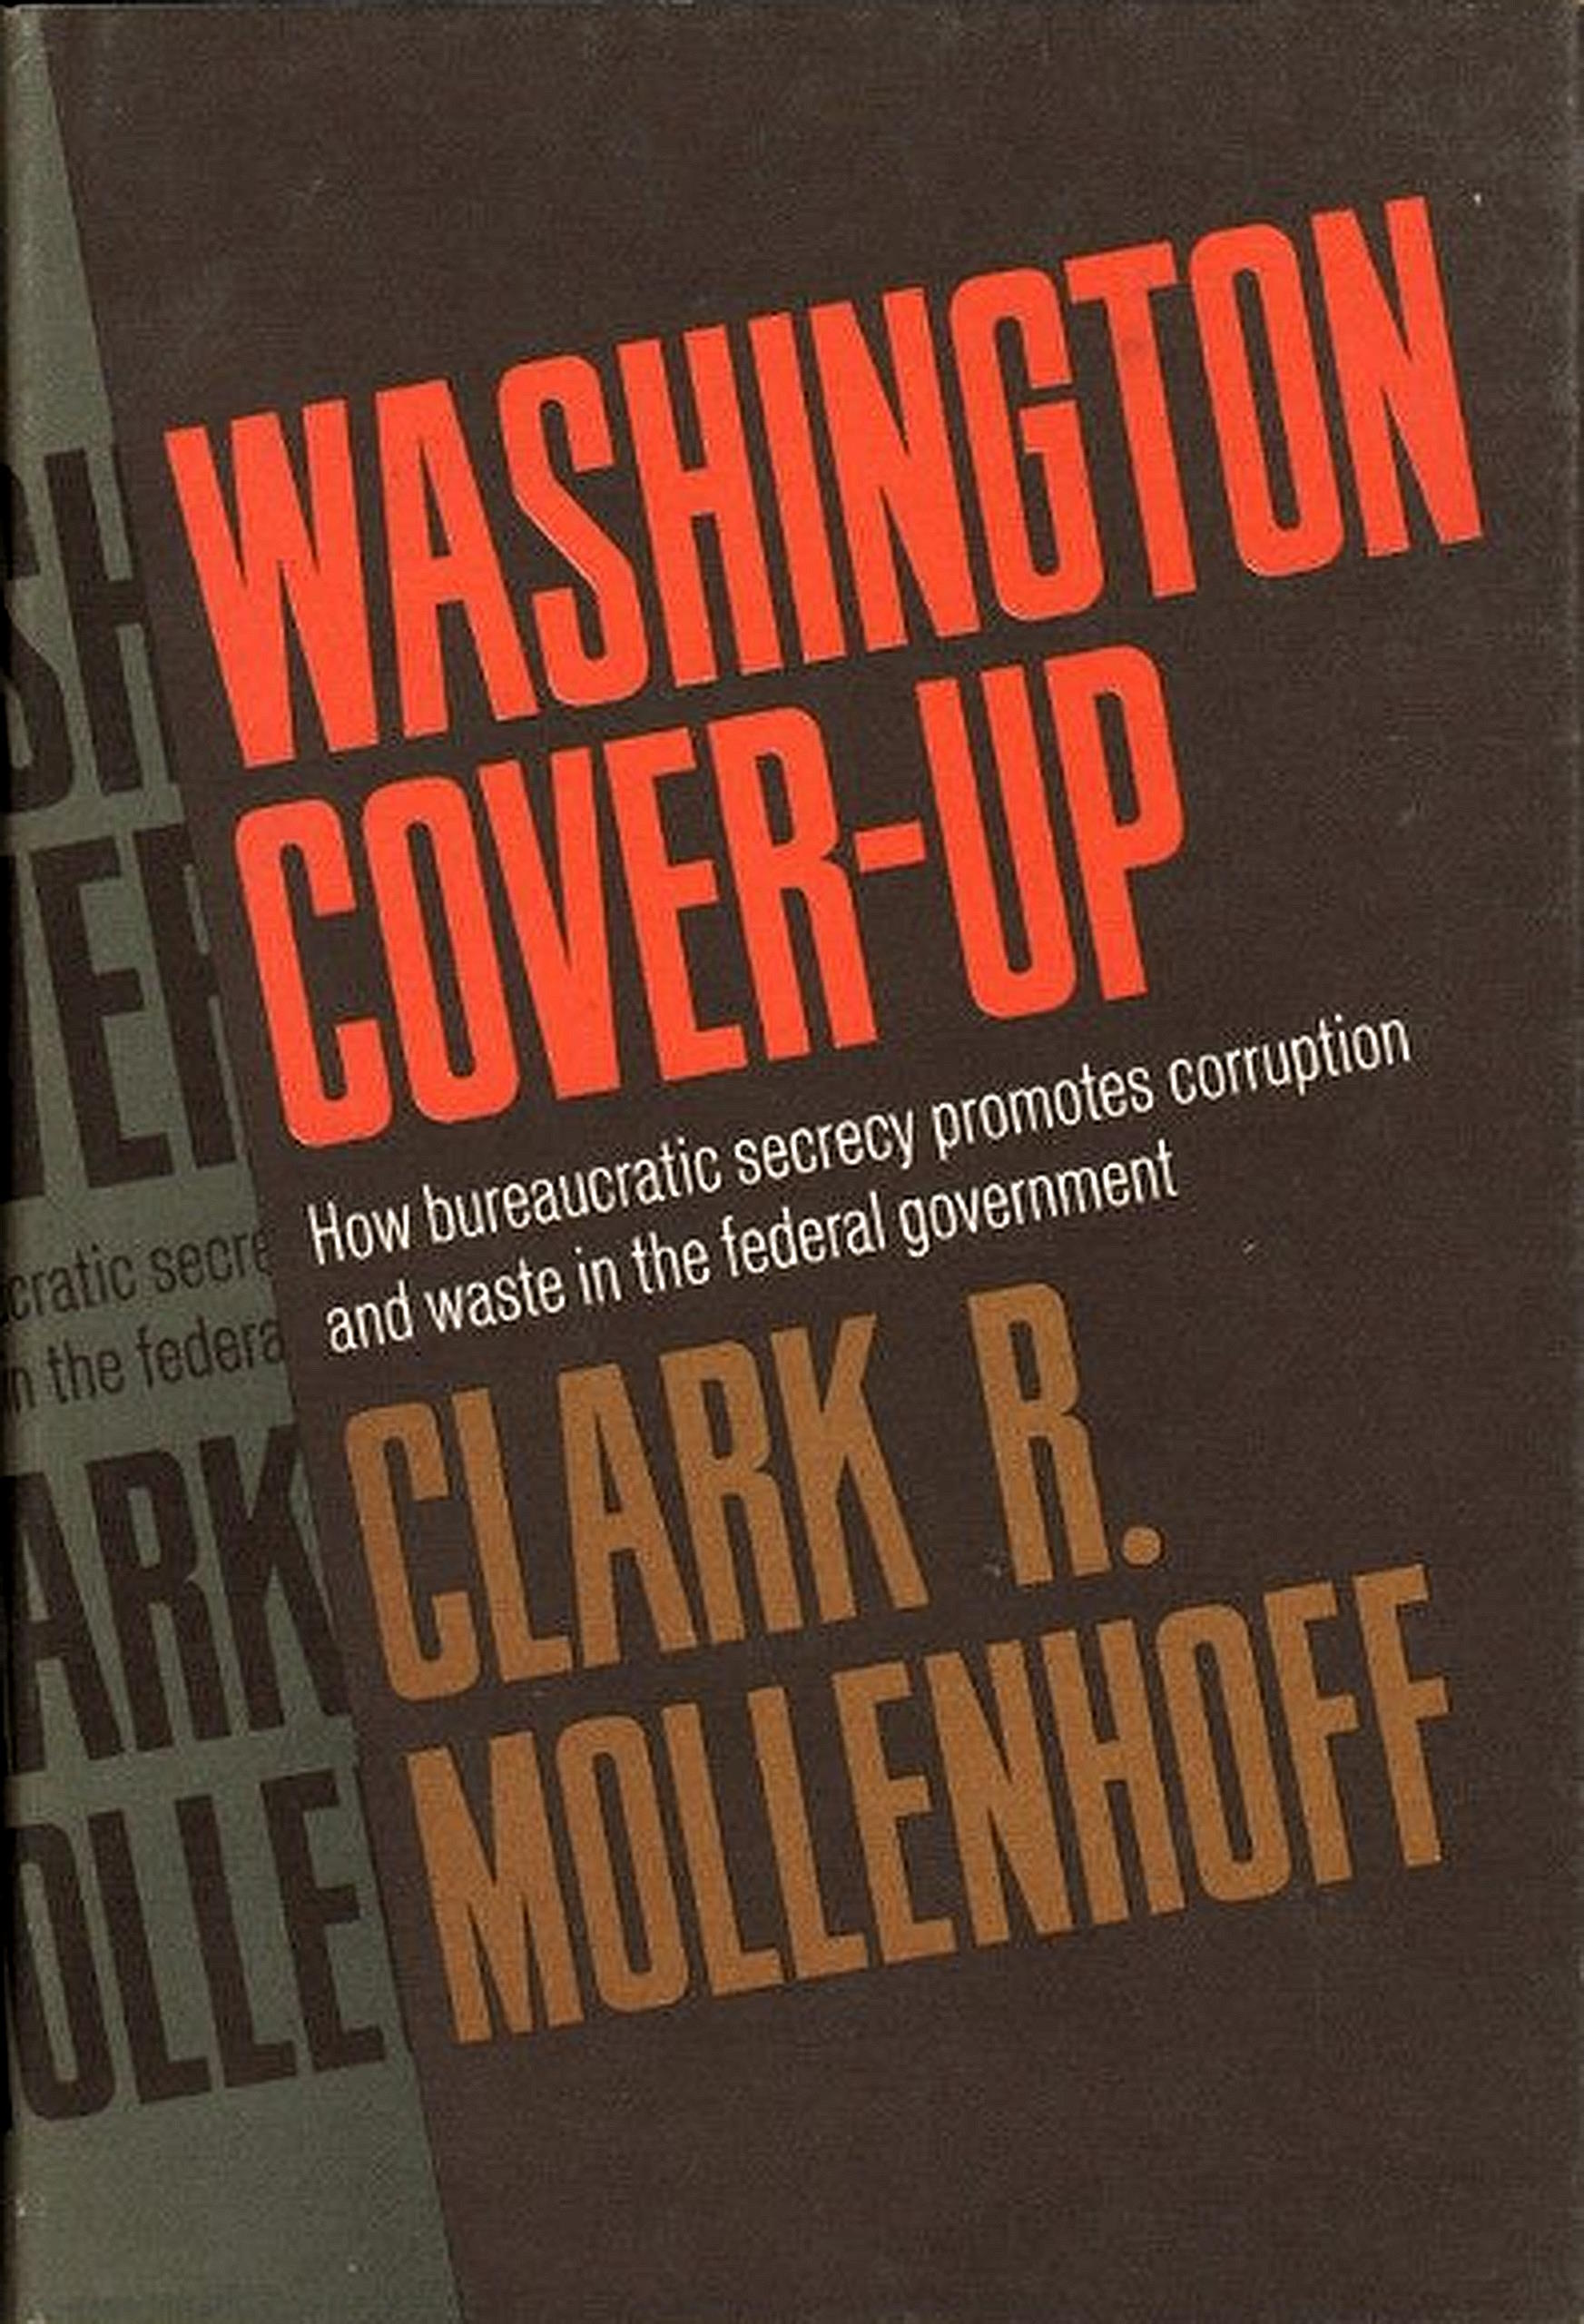 Washington cover-up